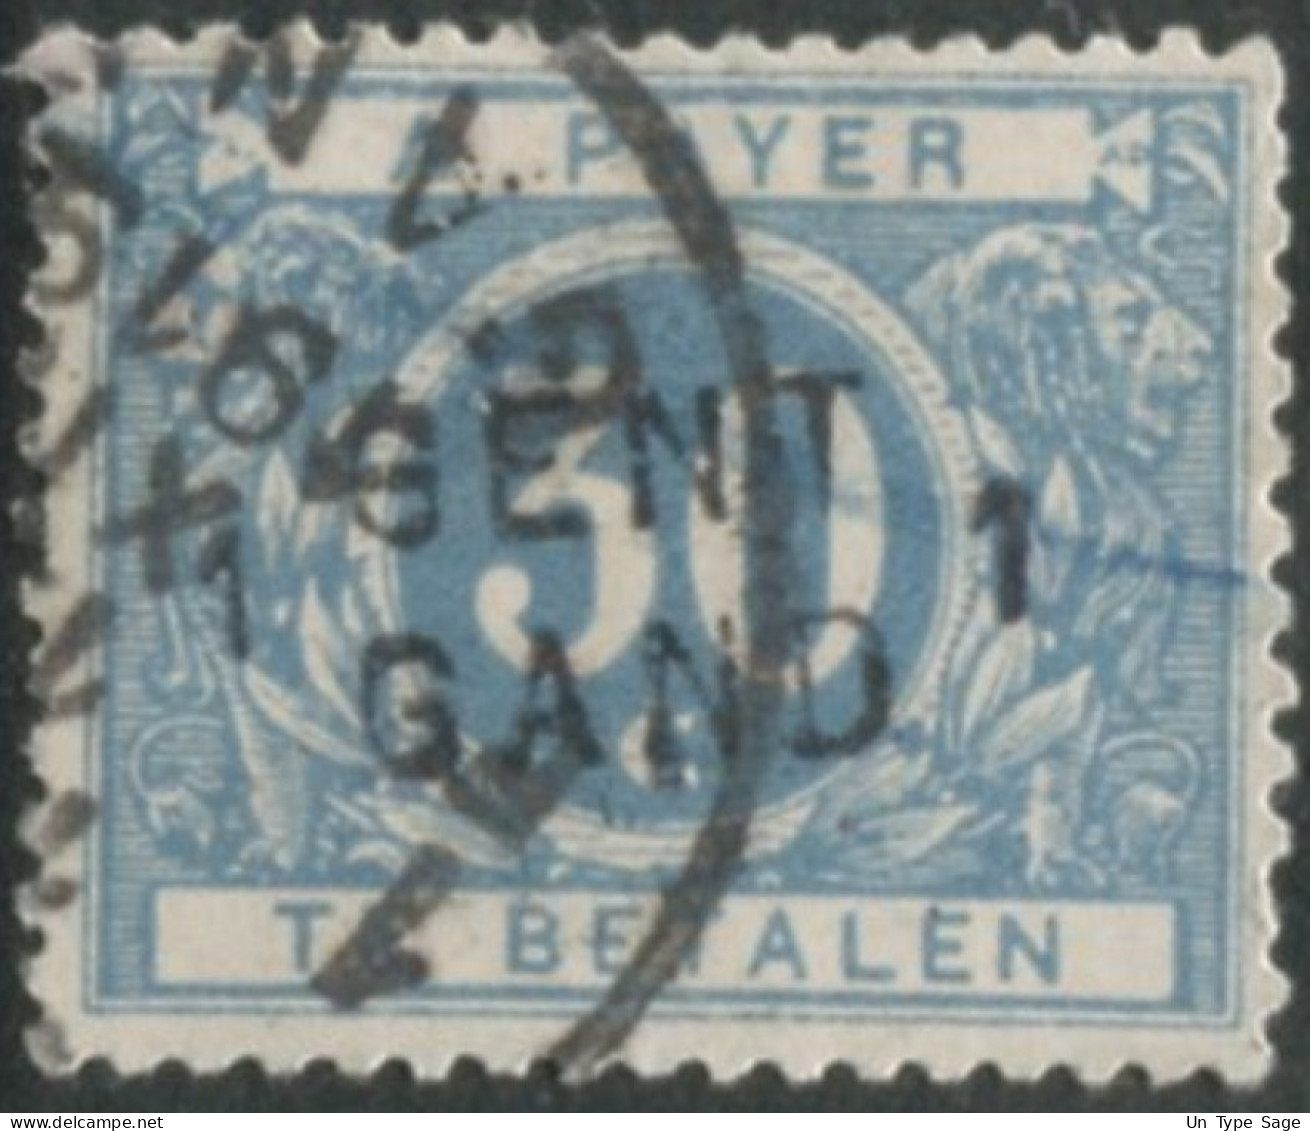 Belgique Timbre-taxe (TX) - Surcharge Locale De Distributeur - GENT / GAND 1 - (F959) - Postzegels